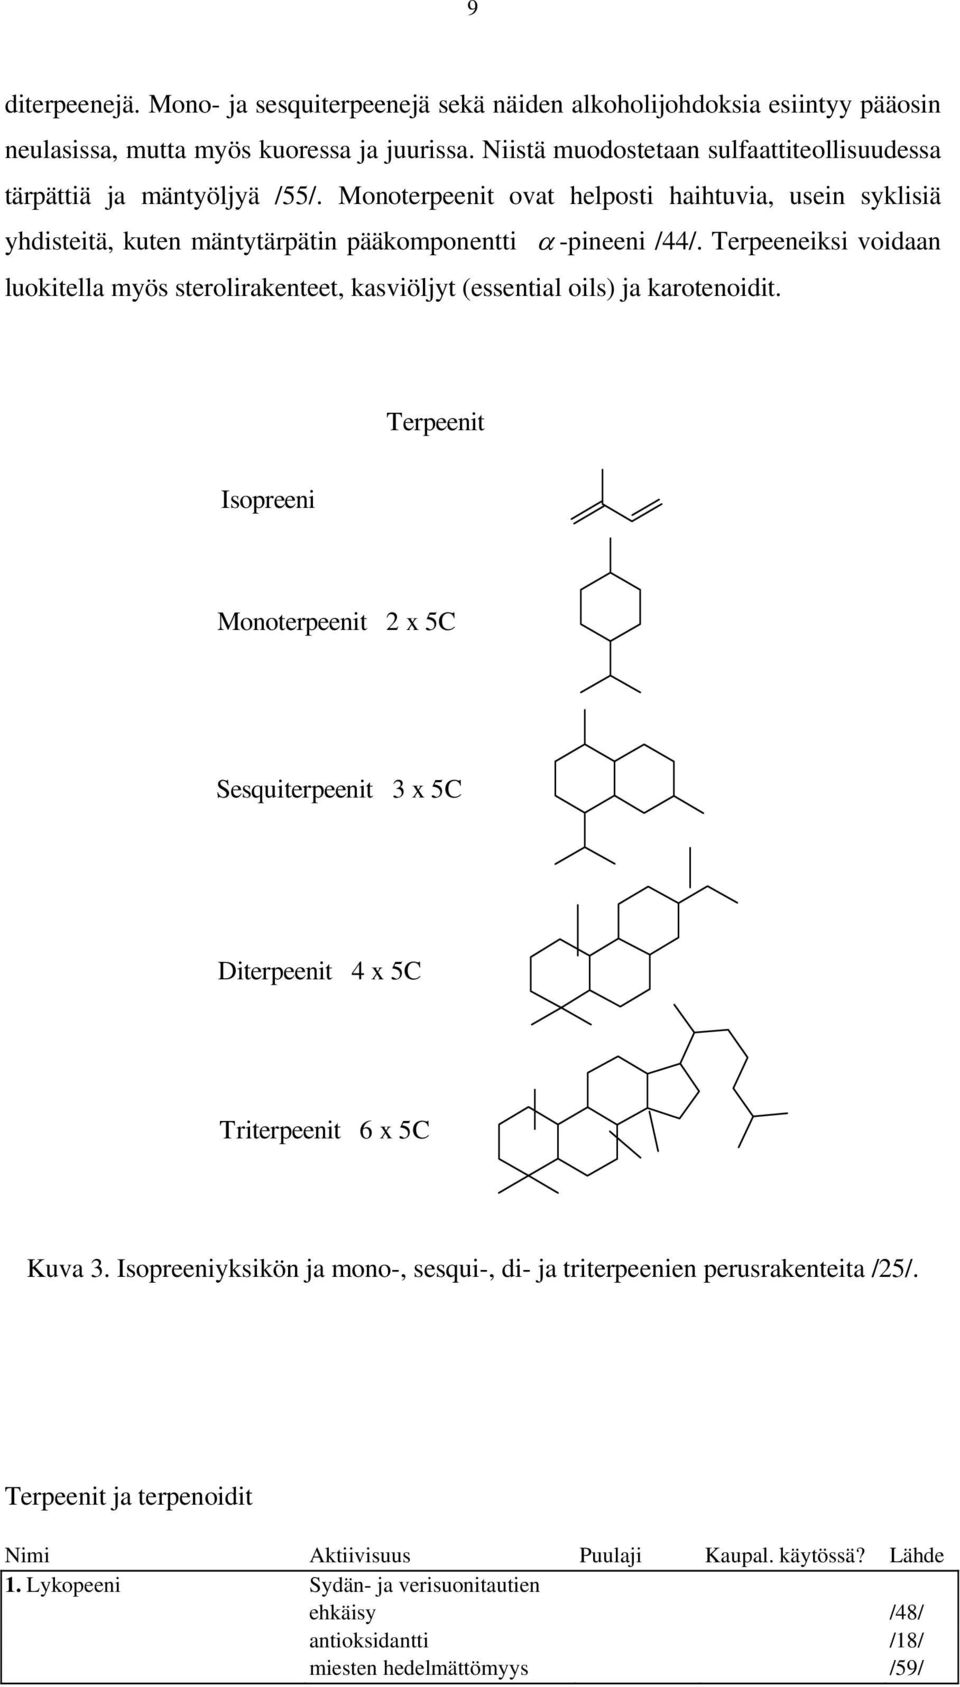 Terpeeneiksi voidaan luokitella myös sterolirakenteet, kasviöljyt (essential oils) ja karotenoidit.